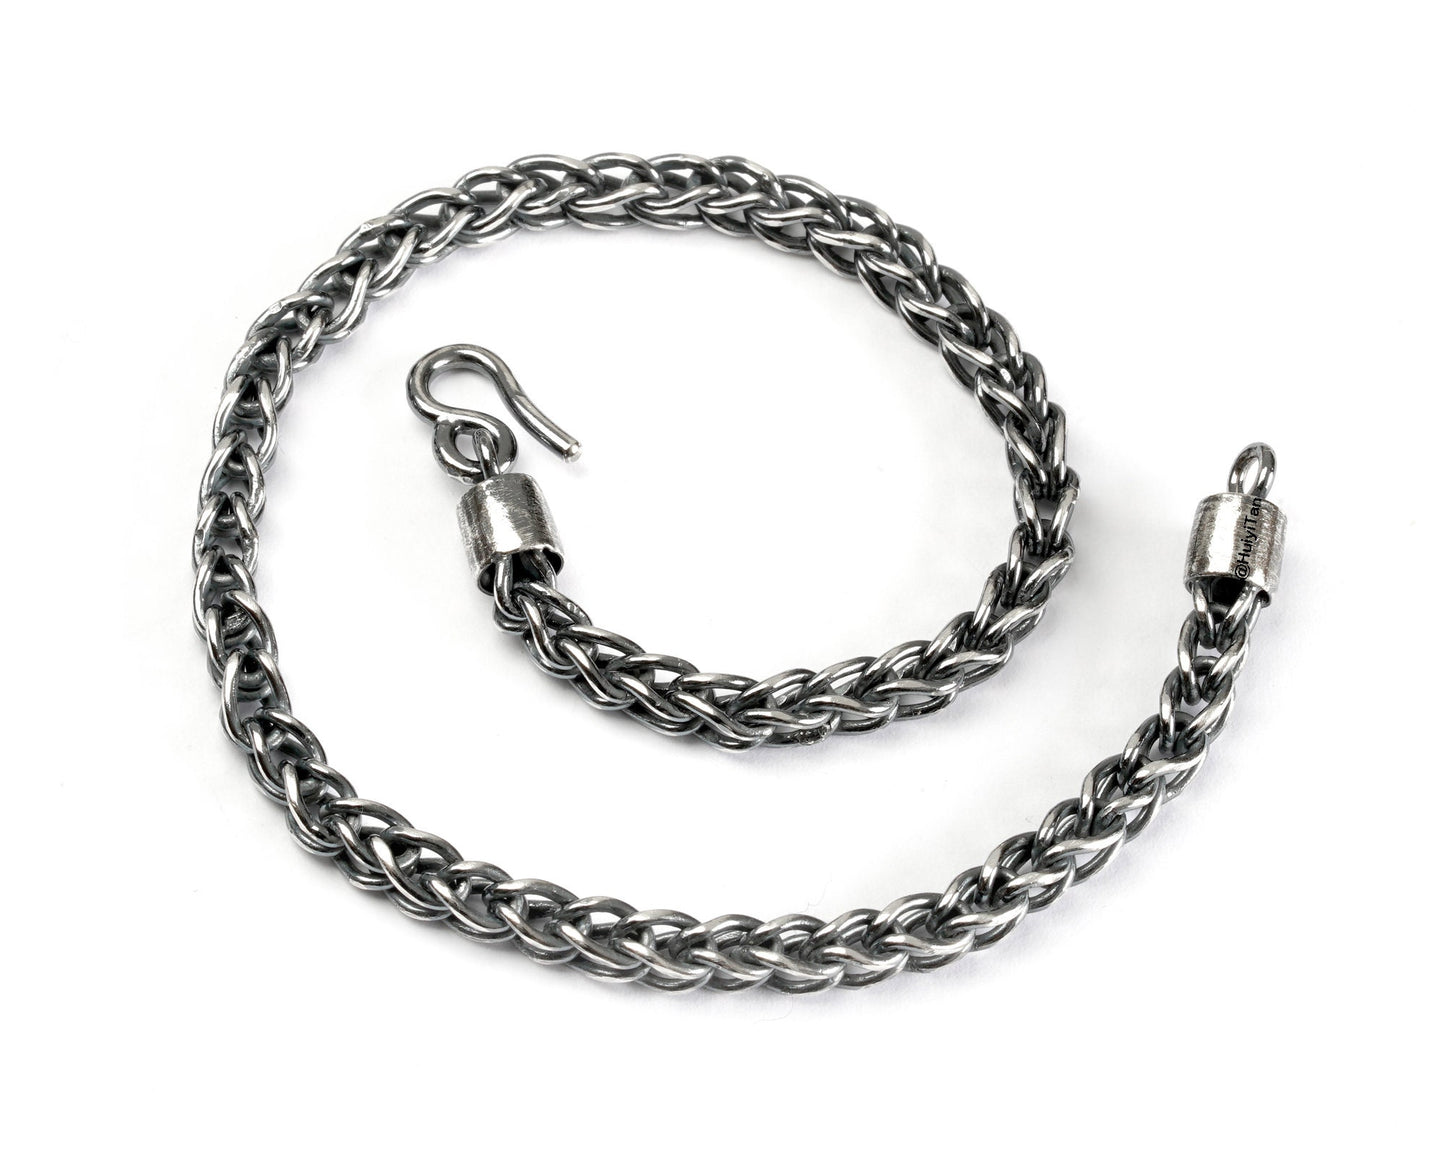 Foxtail Bracelet in Oxidised Sterling Silver, 4mm Foxtail Bracelet in Black Silver, 9" Long Bracelet